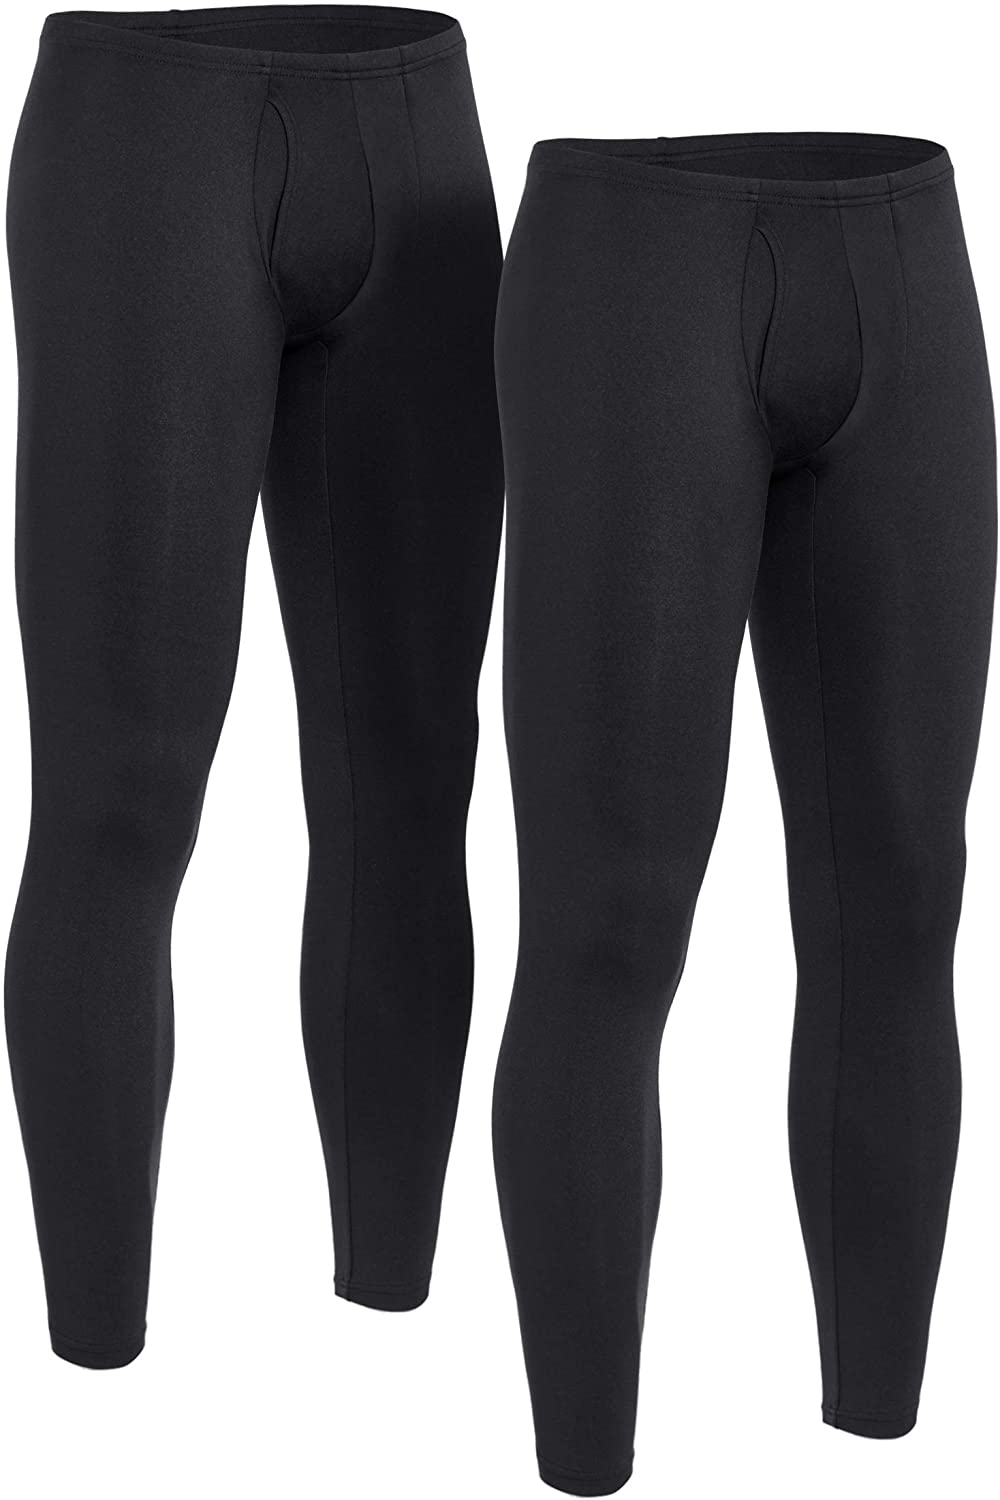 TSLA 2 Pack Men's Thermal Underwear Pants, Heated Warm Fleece Lined ...